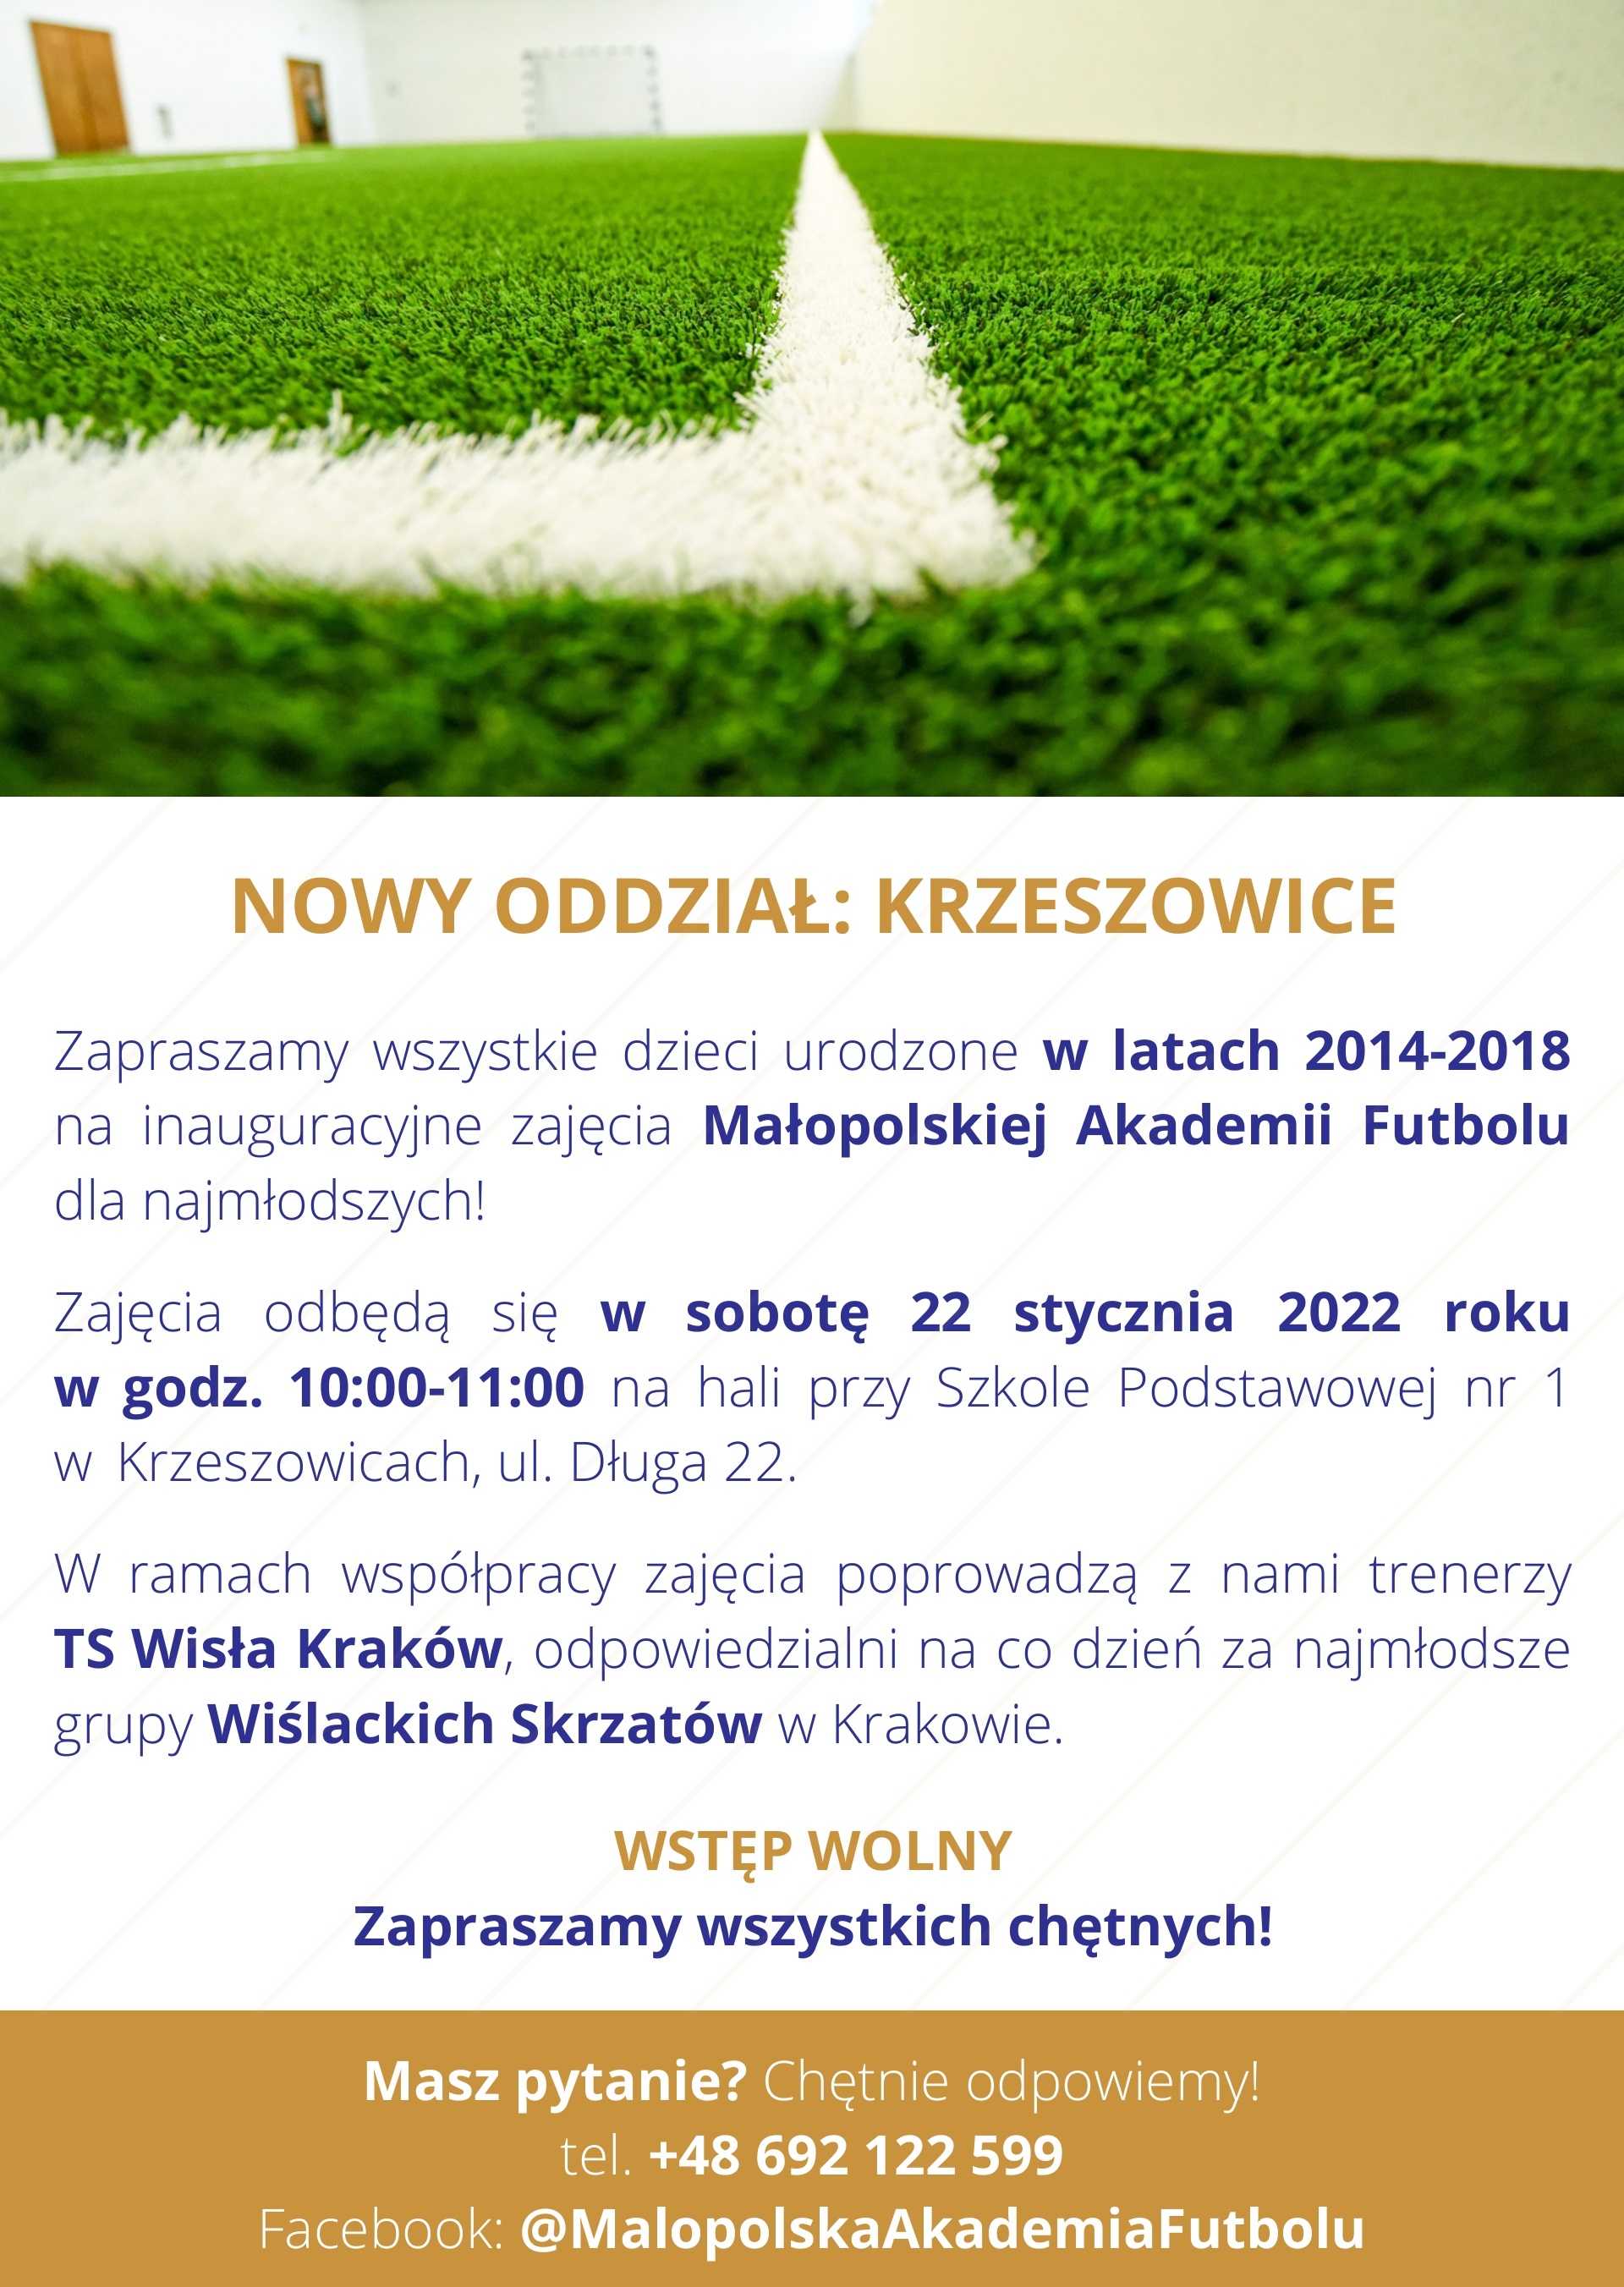 Małopolska Akademia Futbolu , Wiślacka Szkoła Futbolu oraz UKS Jedynka Krzeszowice - współpraca.